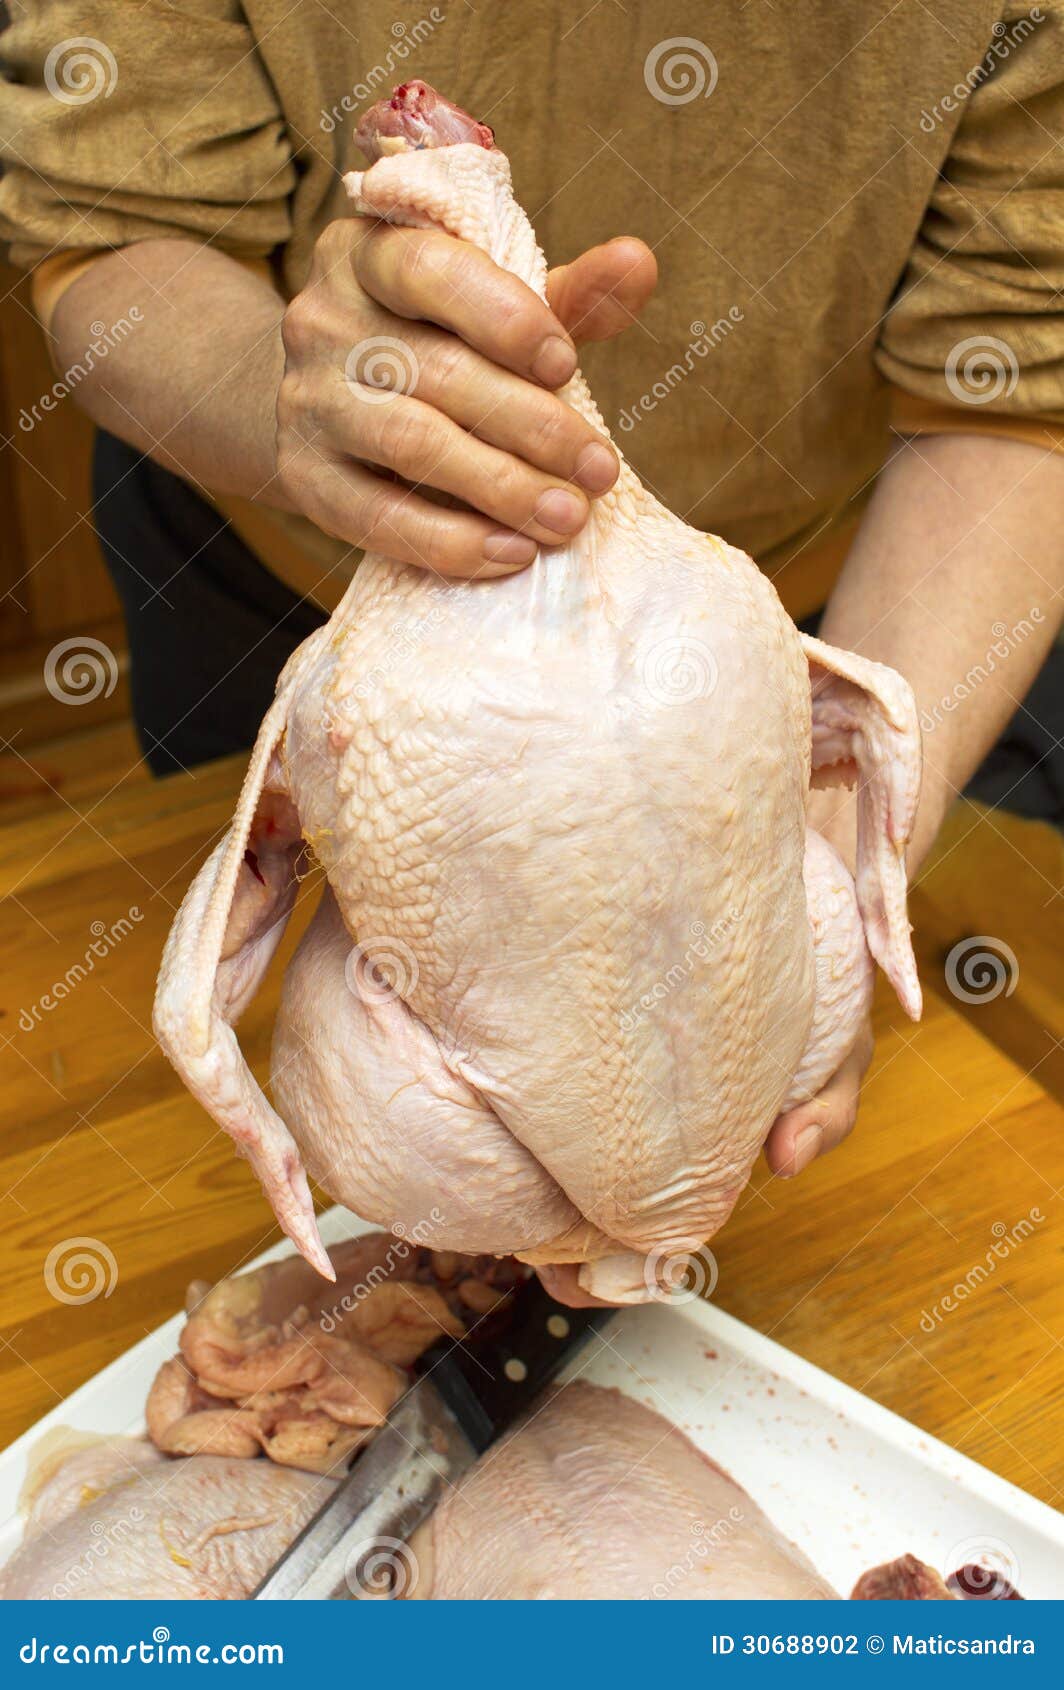 raw-chicken-fresh-hen-hand-30688902.jpg